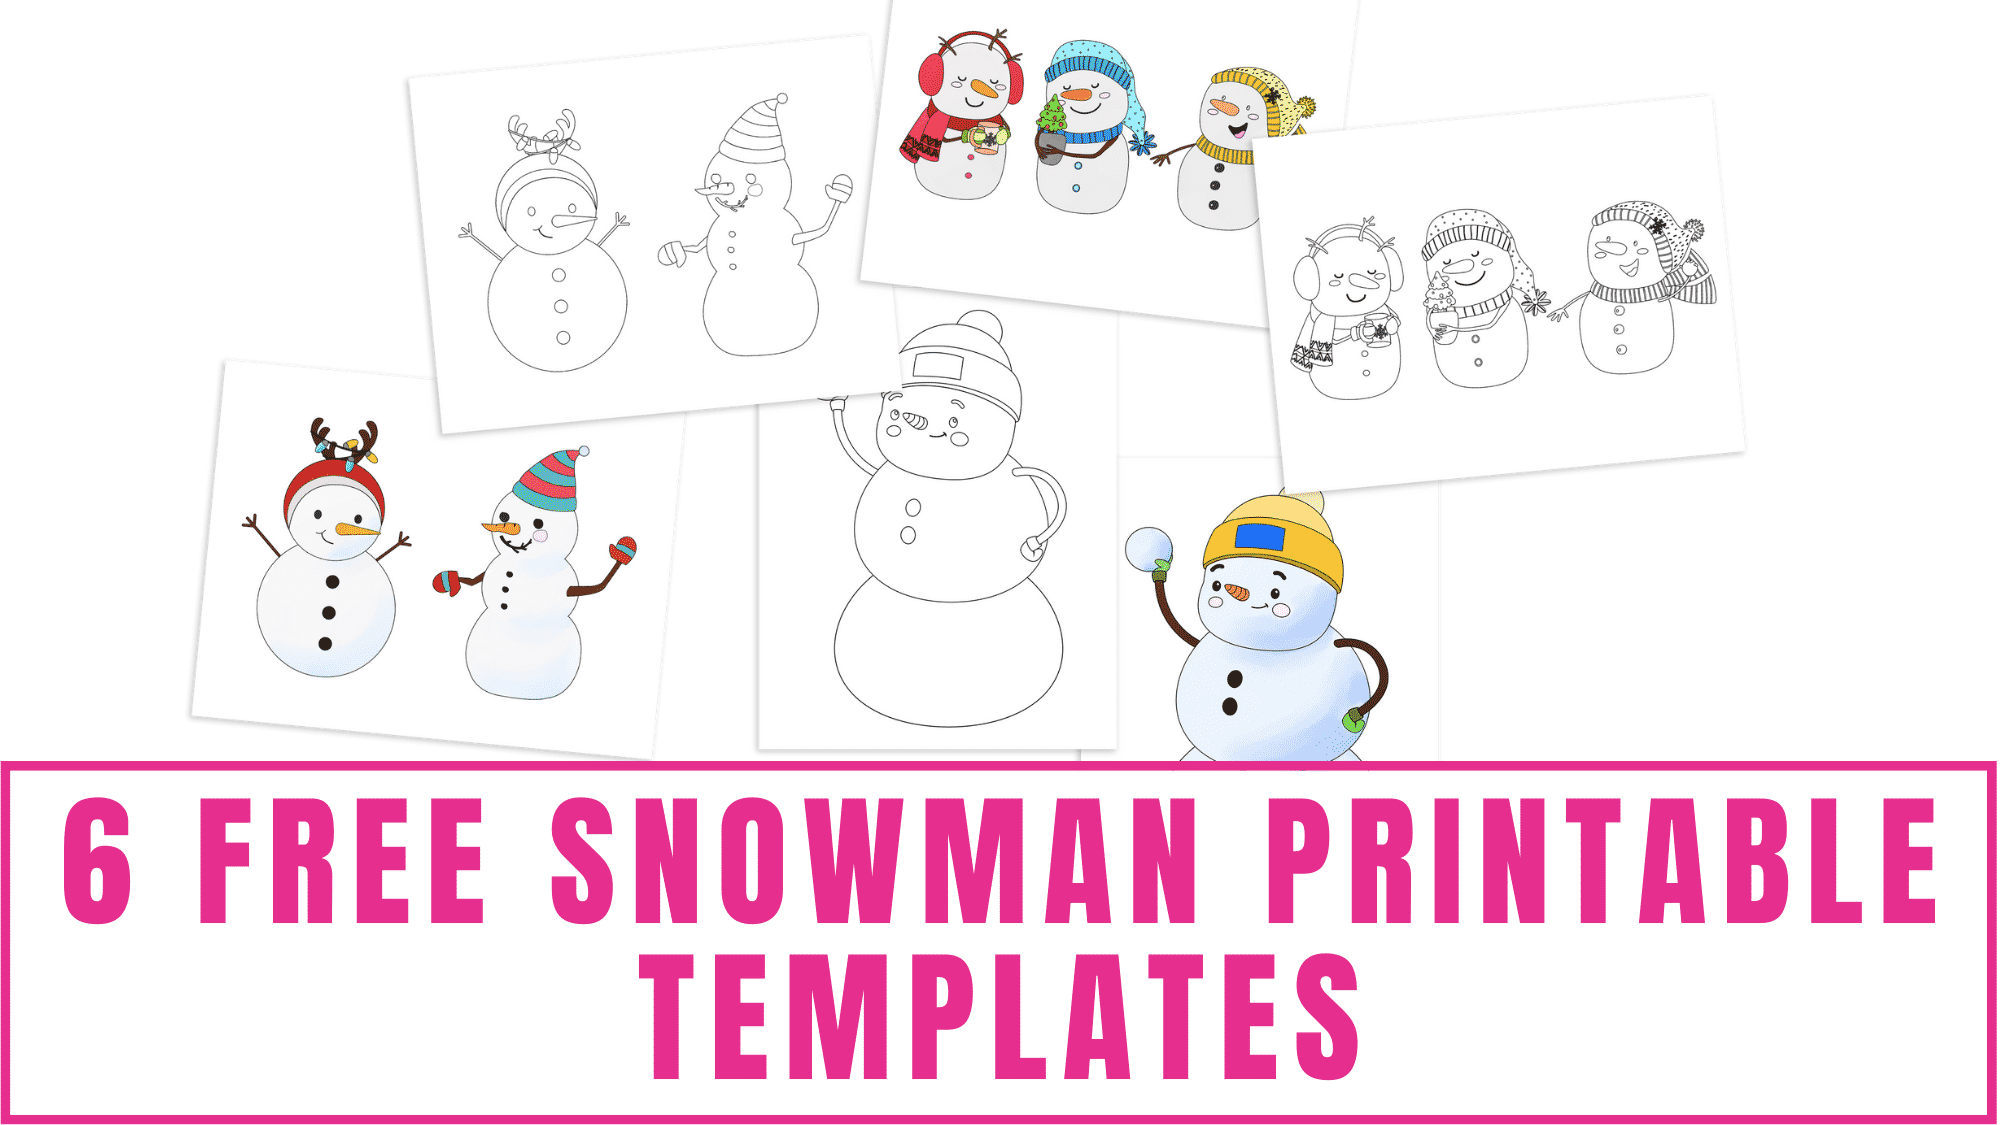 Free snowman printable templates